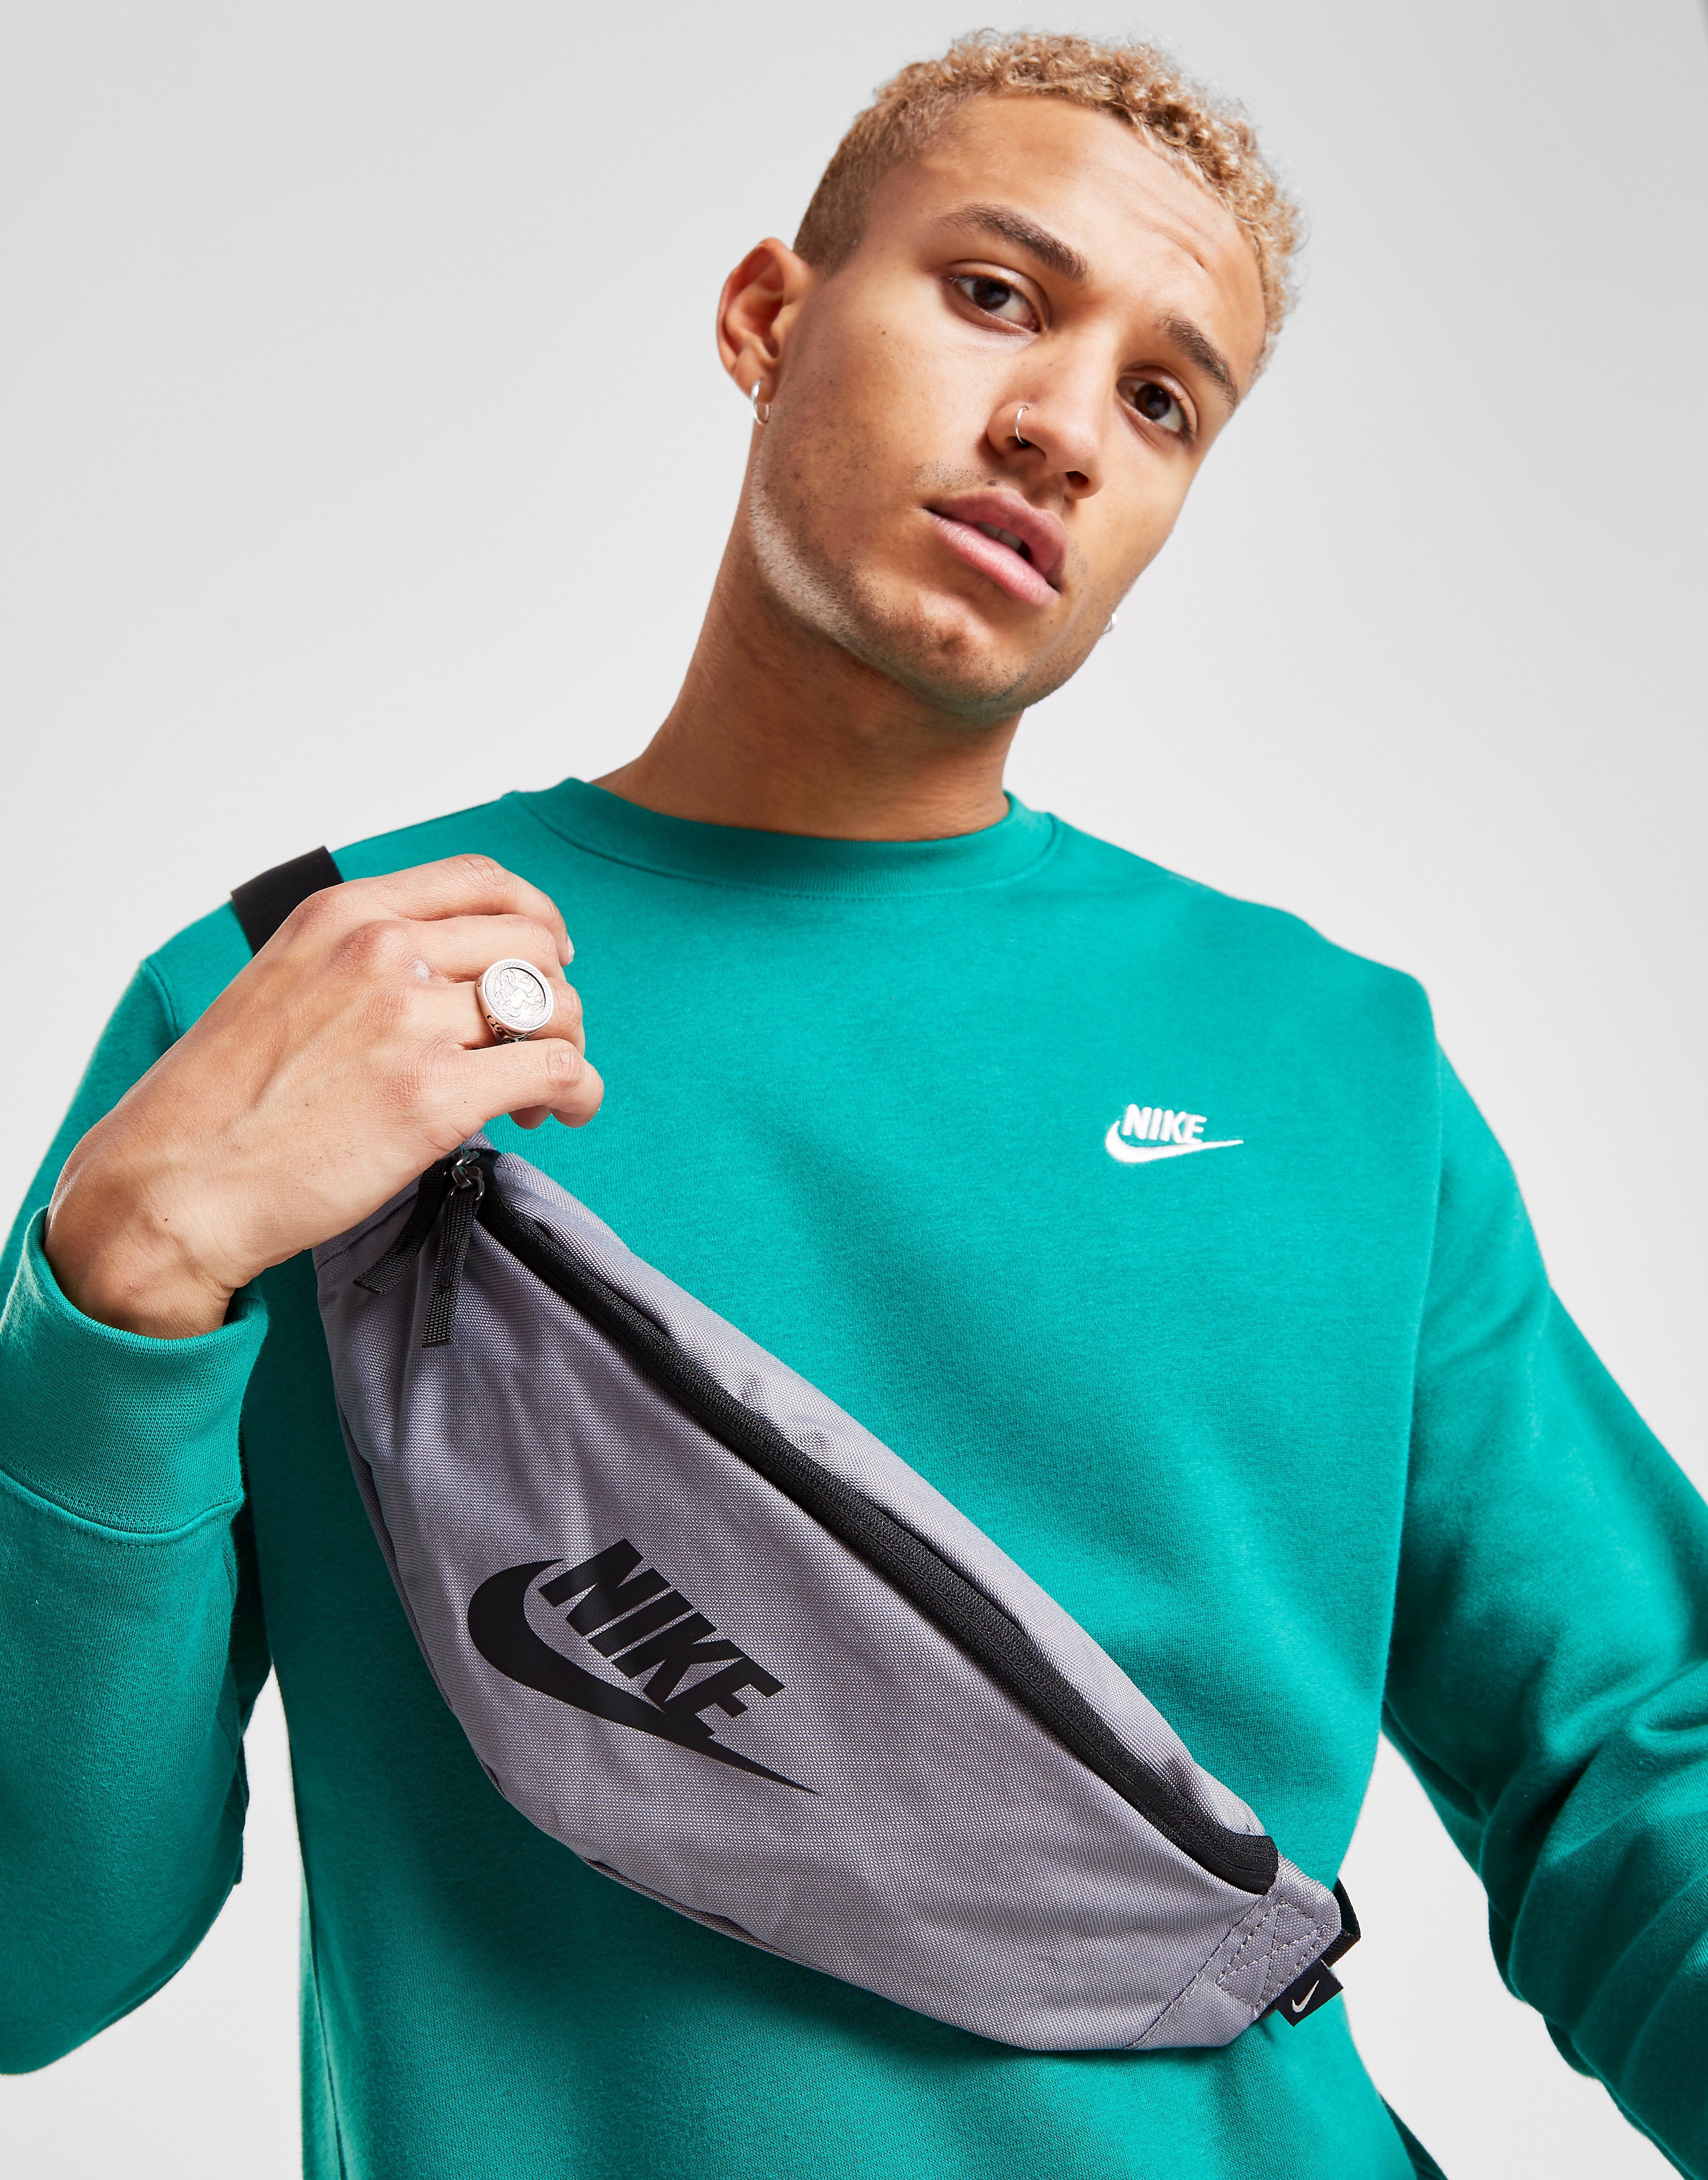 Nike Waist Bags For Men | semashow.com